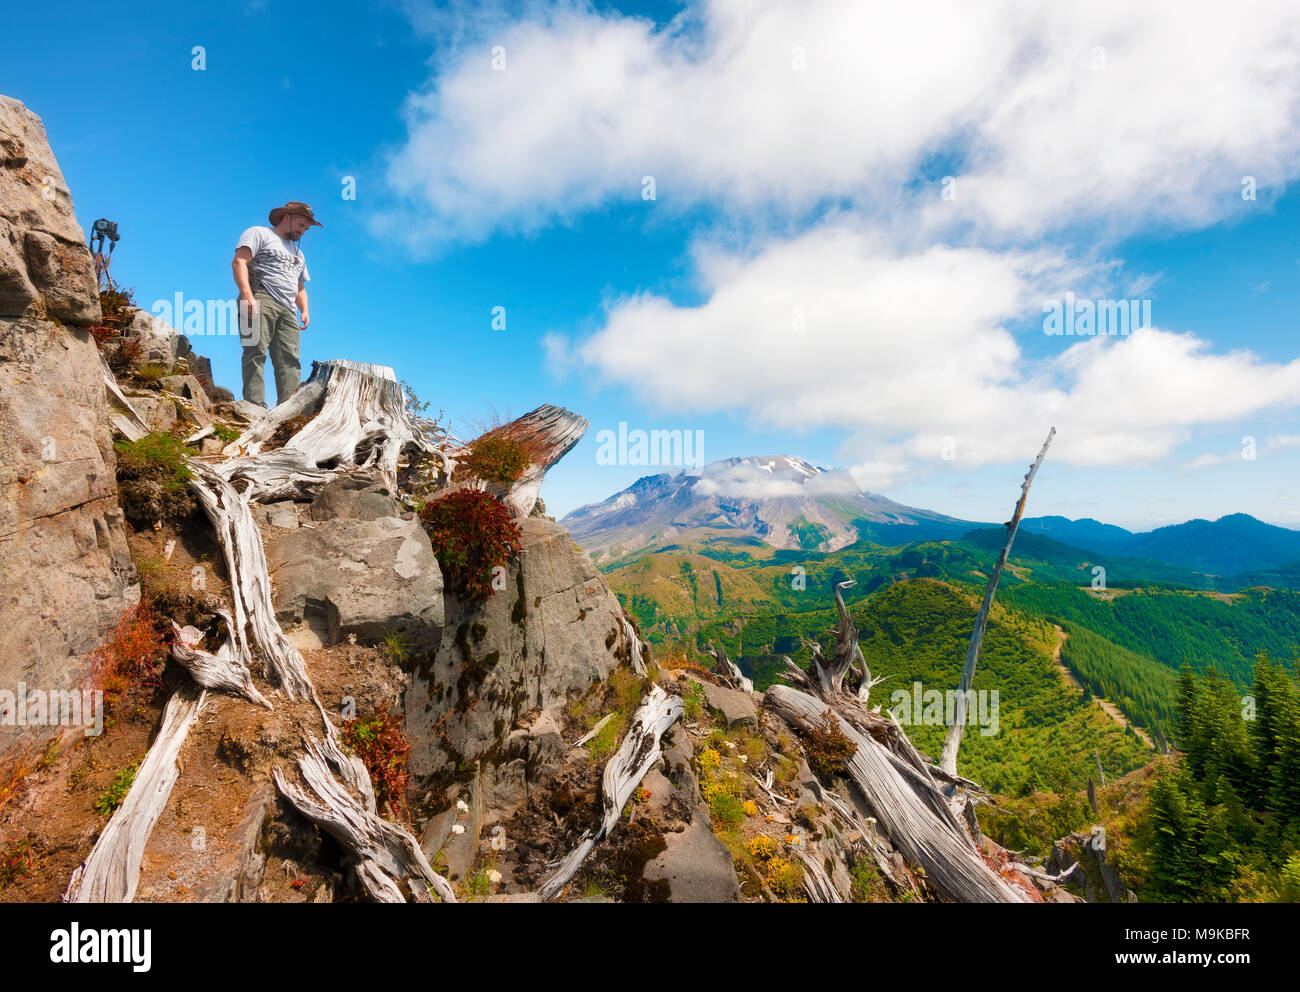 Ein Wanderer/Fotograf schaut von oben auf Castle Peak, seine Kamera und Stativ in der Nähe mit Mt. St. Helens im Hintergrund in Gifford Pinchot Na Stockfoto